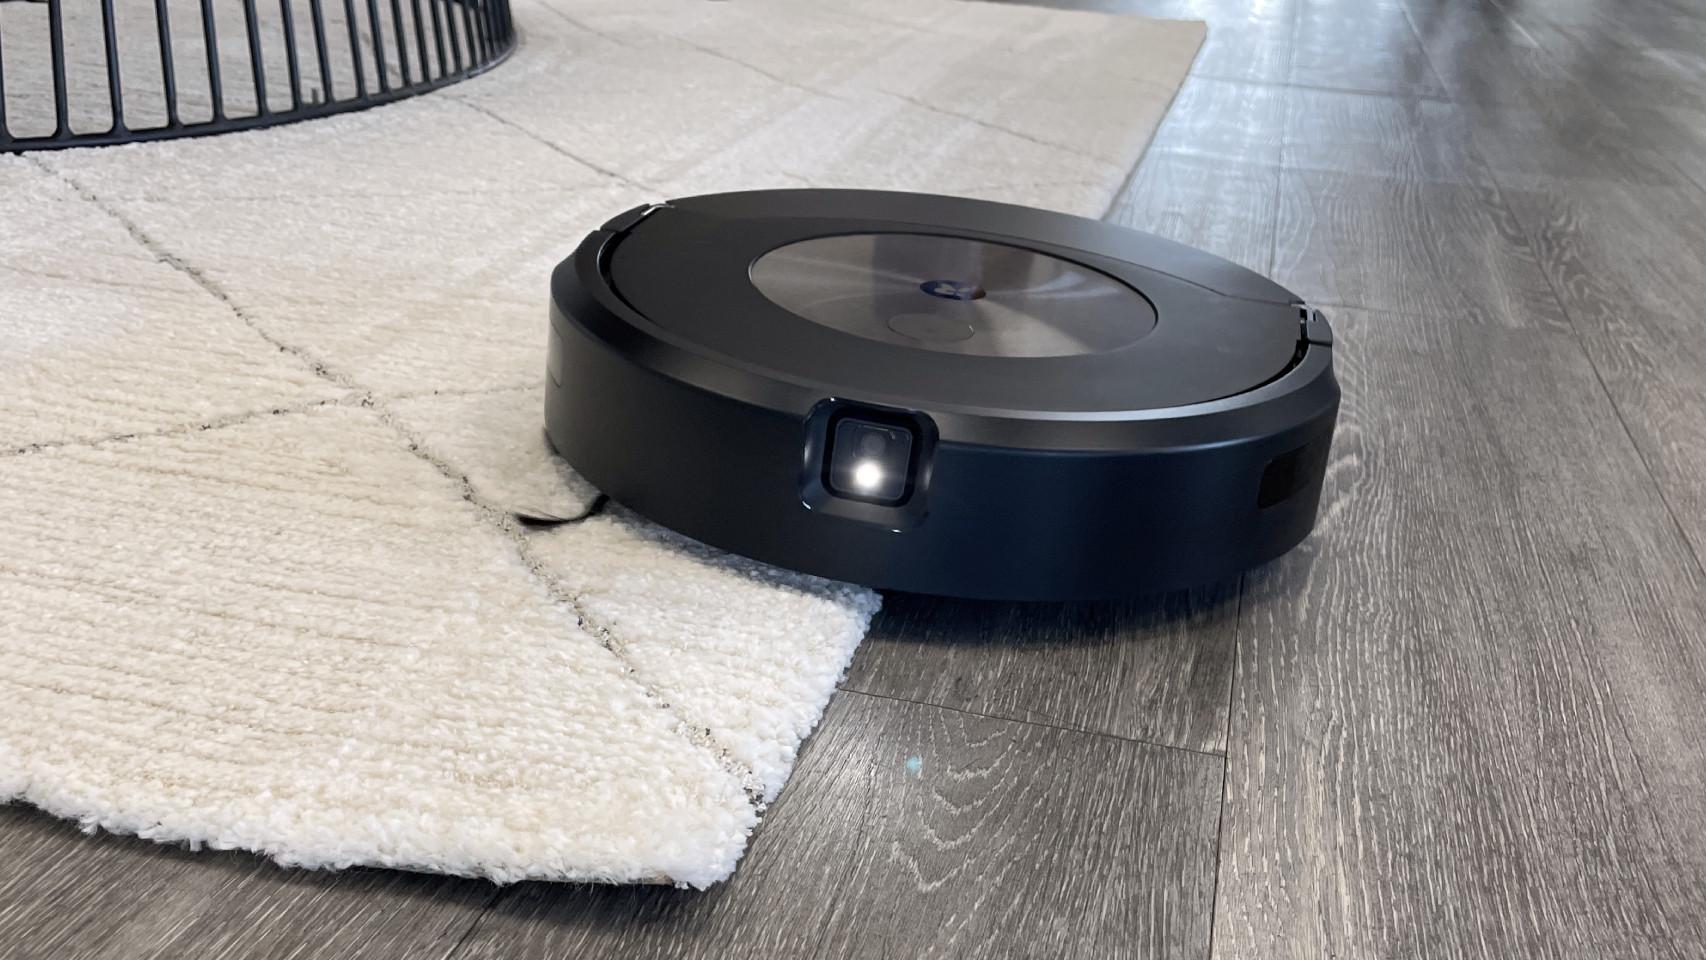 Qué alfombras puede aspirar una Roomba? - Blog de Aspiradora Robot